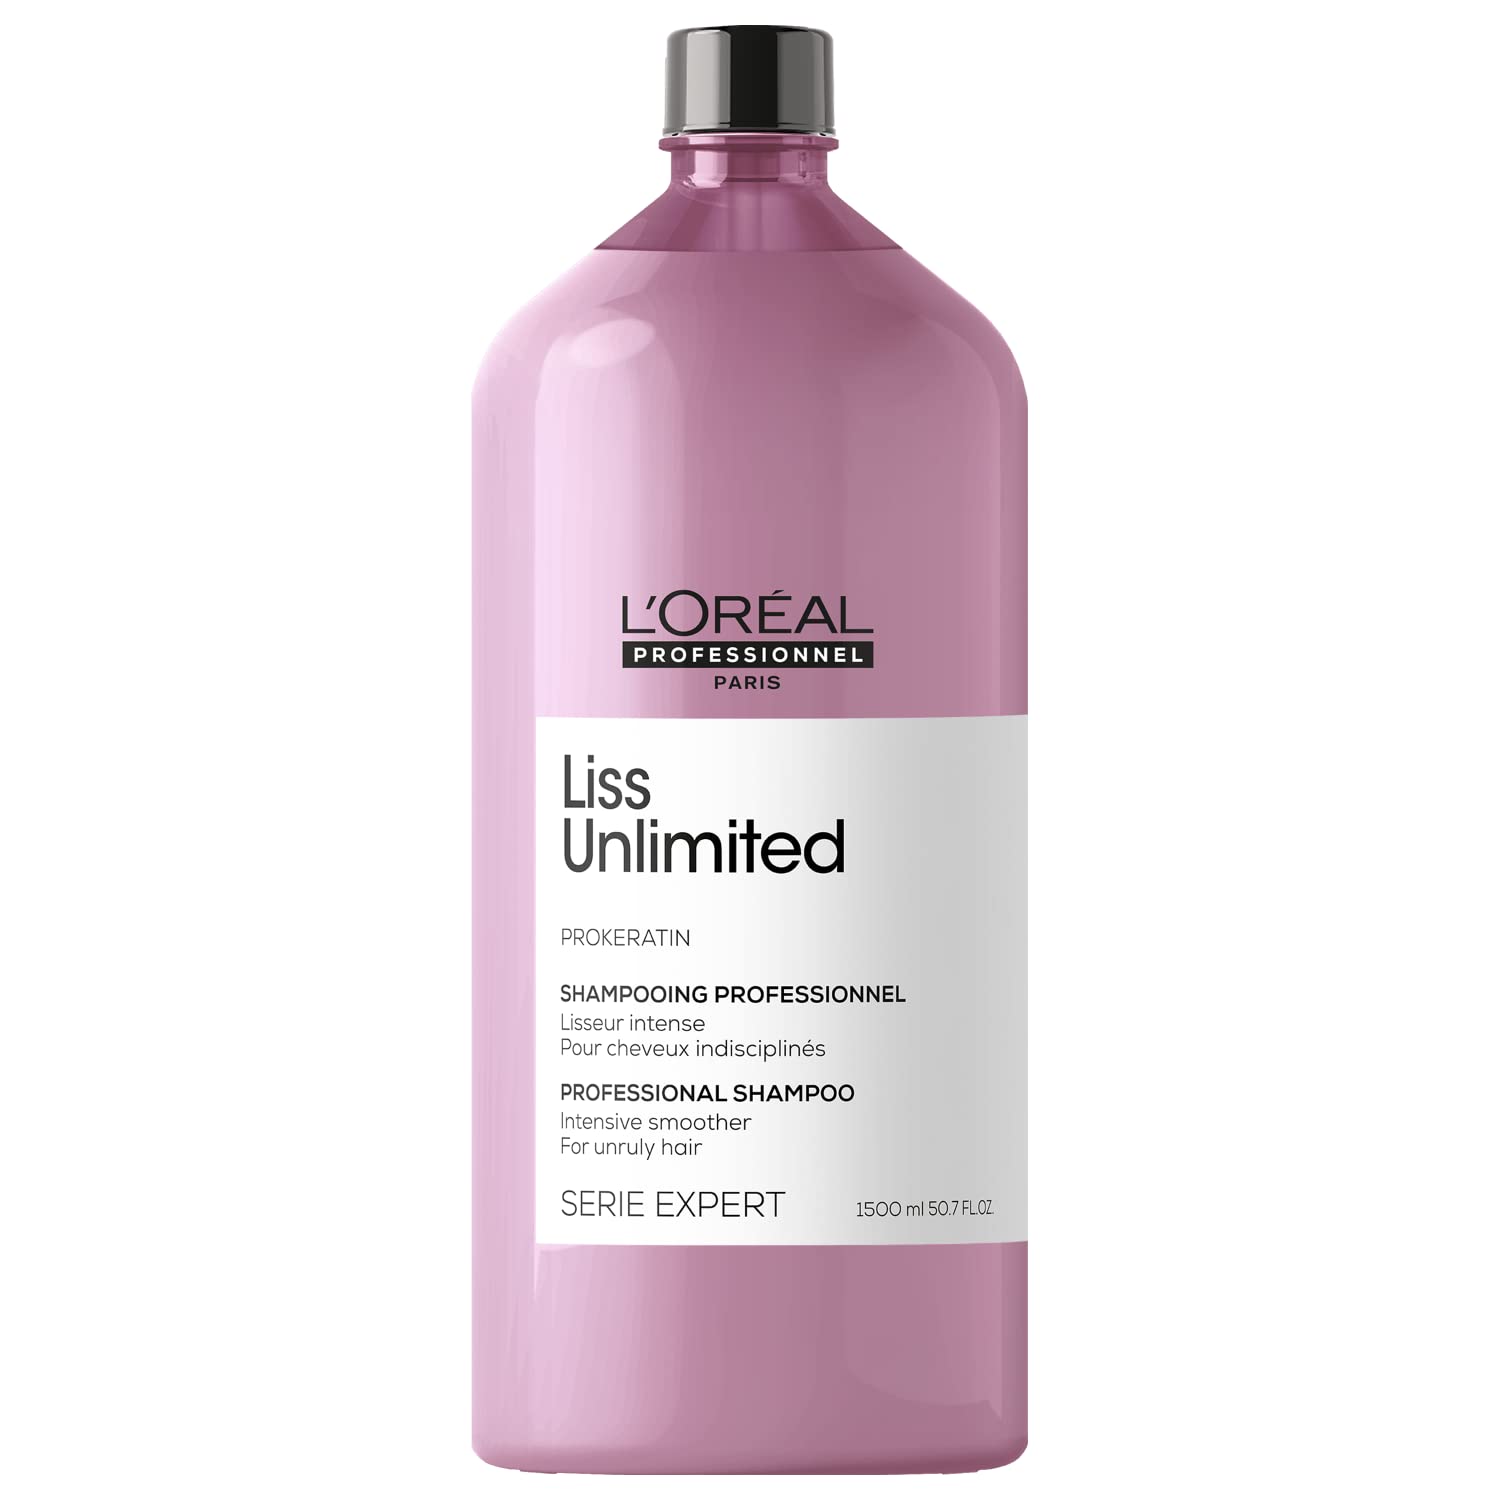 Die L 'Oreal Professionnel Shampoo mit pro-keratina – 1500 ml